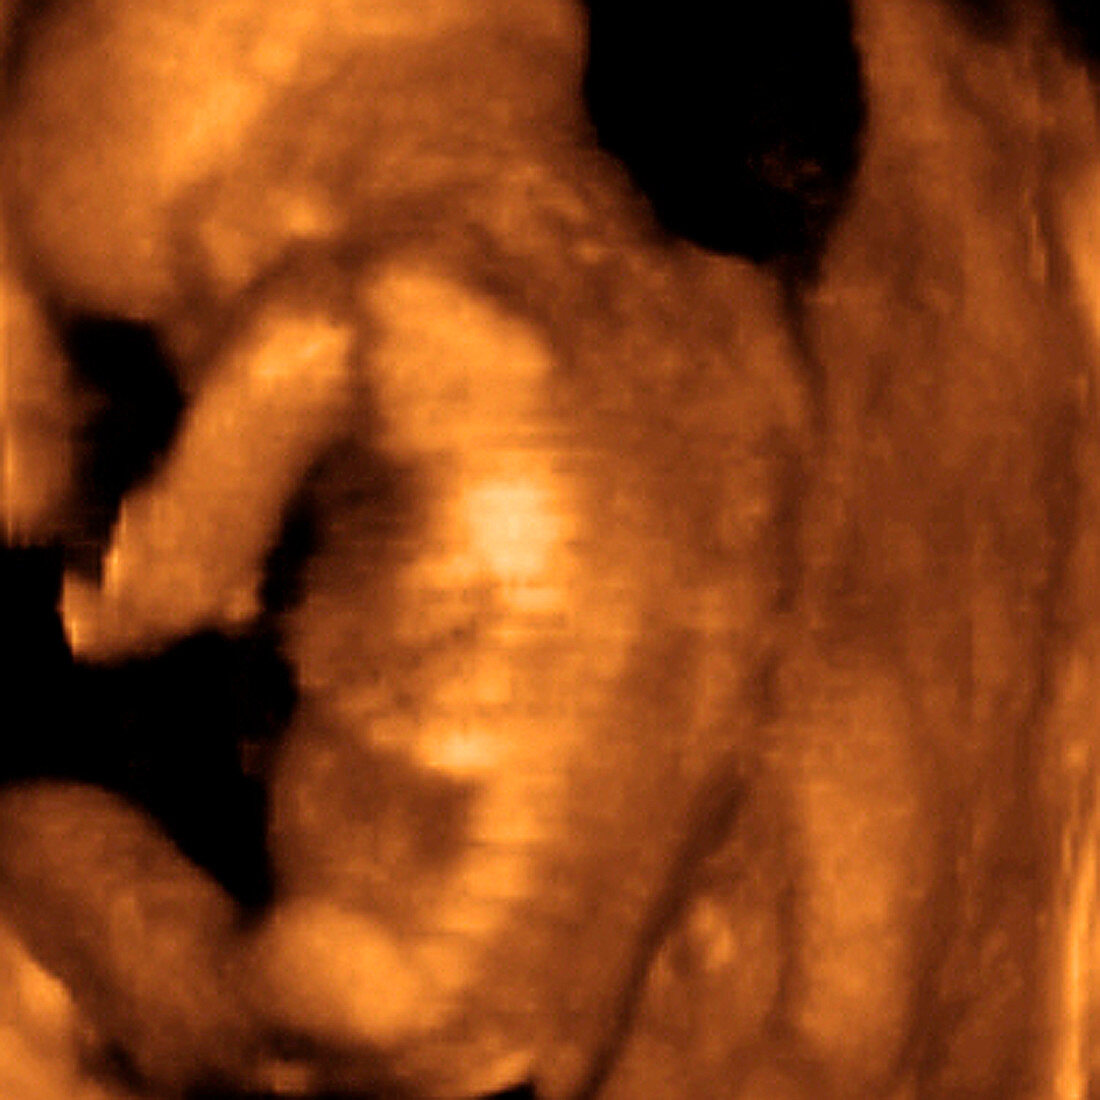 Foetus' back,3-D ultrasound scan